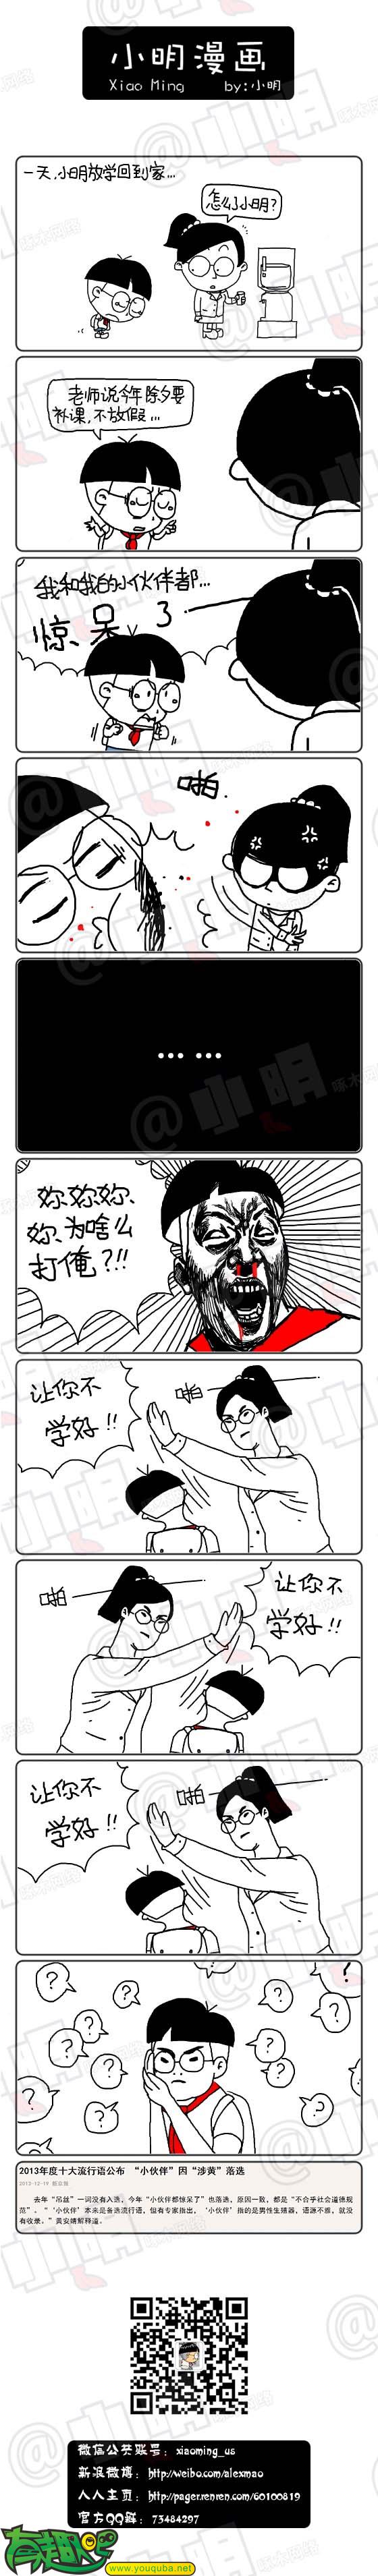 小明系列漫画：流行语